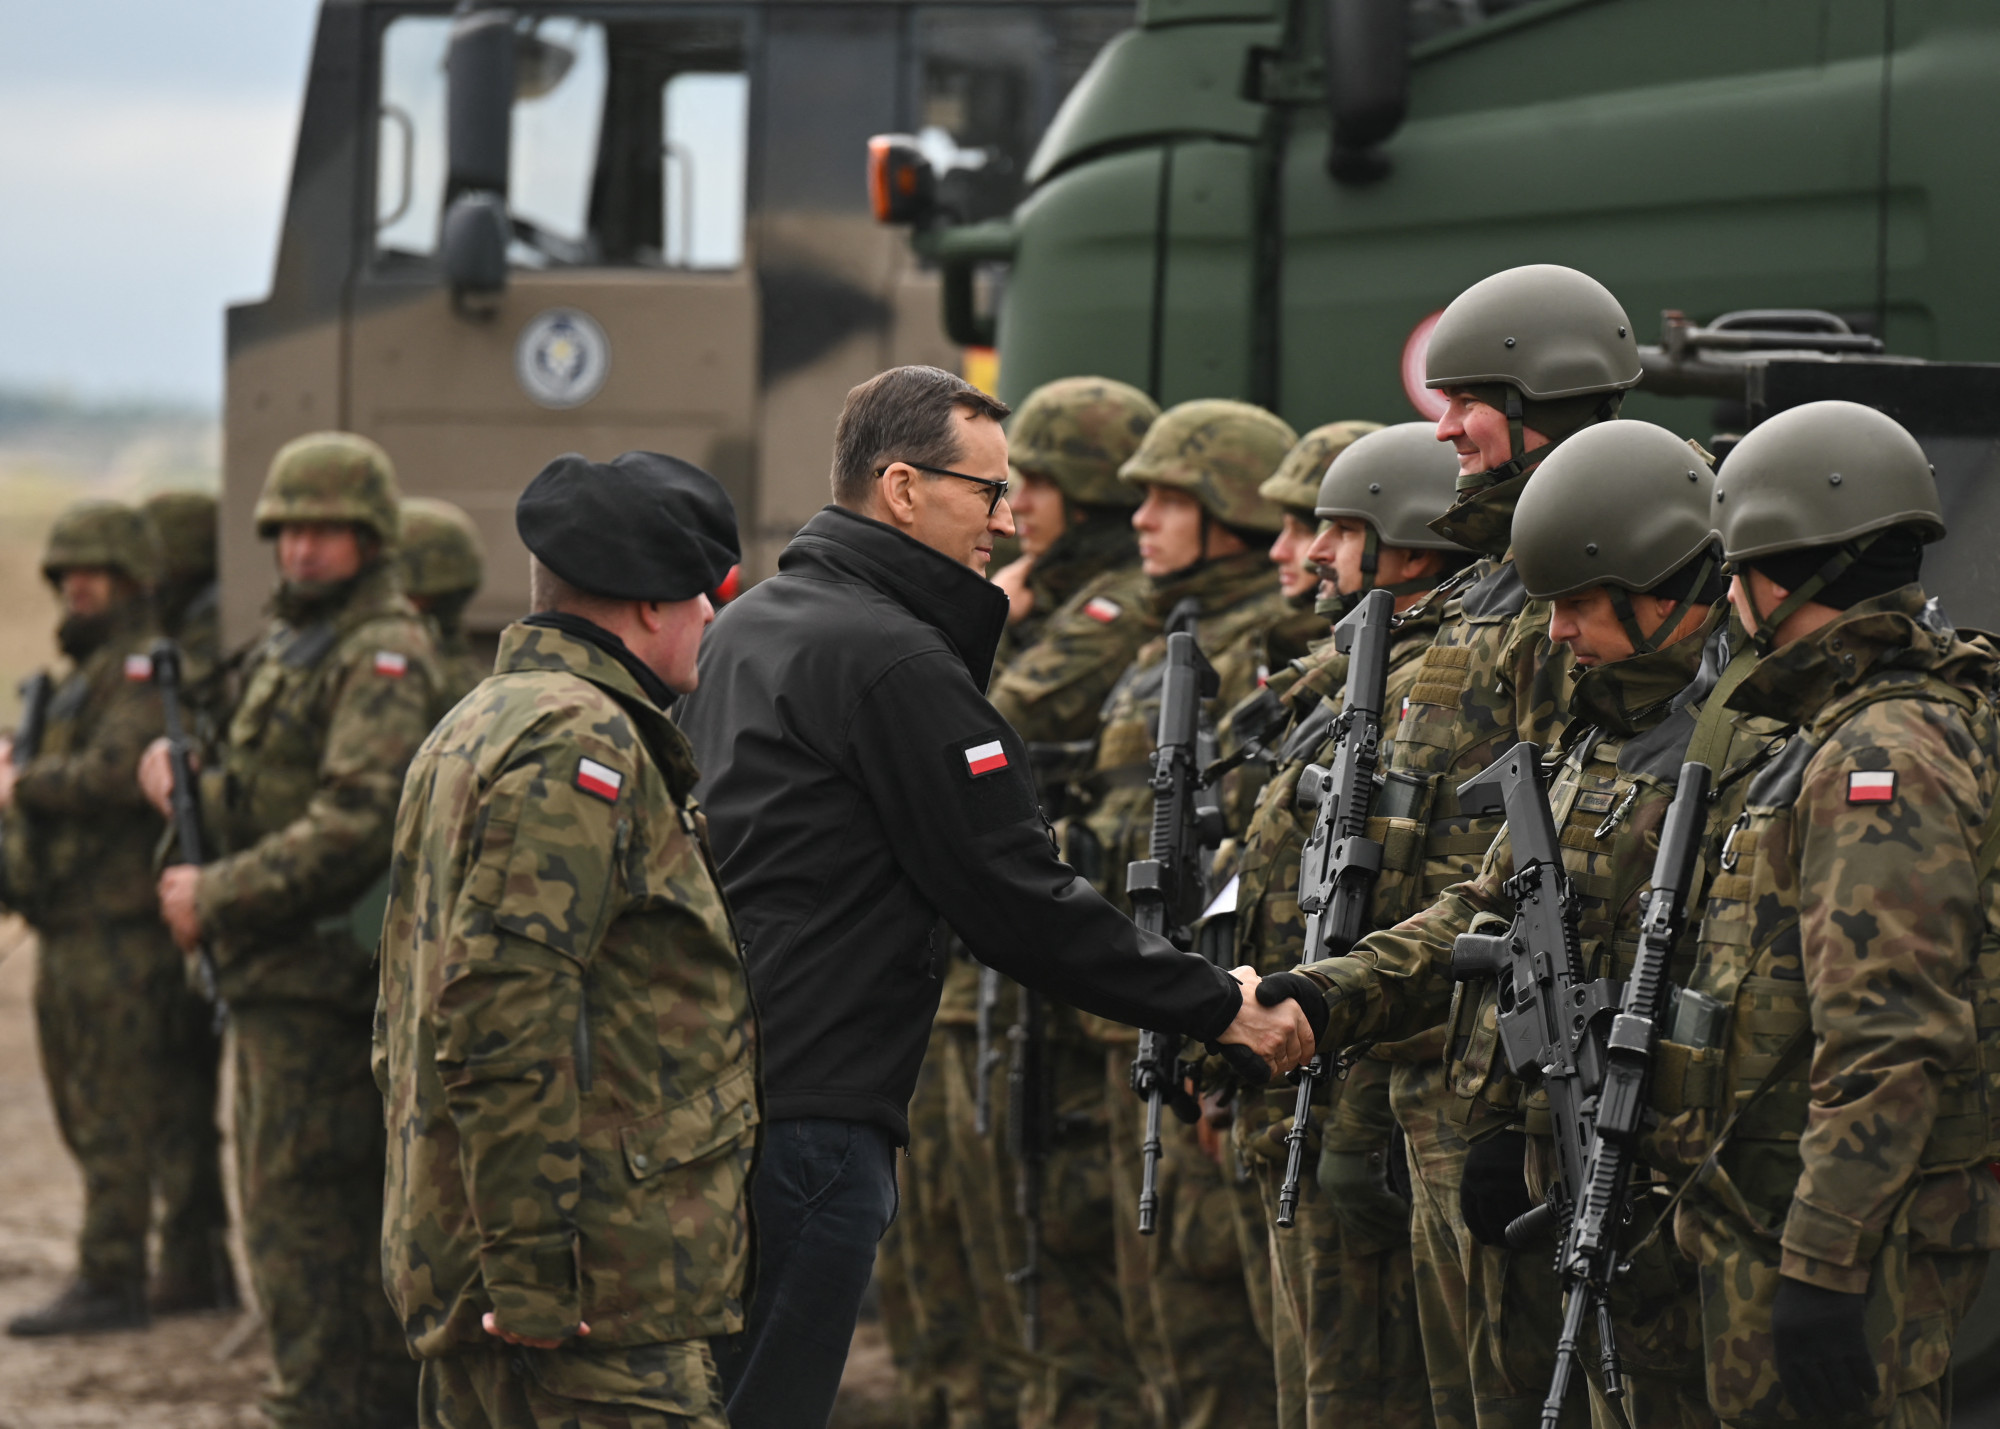 Rekordokat döntött a lengyel hadseregbe jelentkezők száma a háború kitörése óta